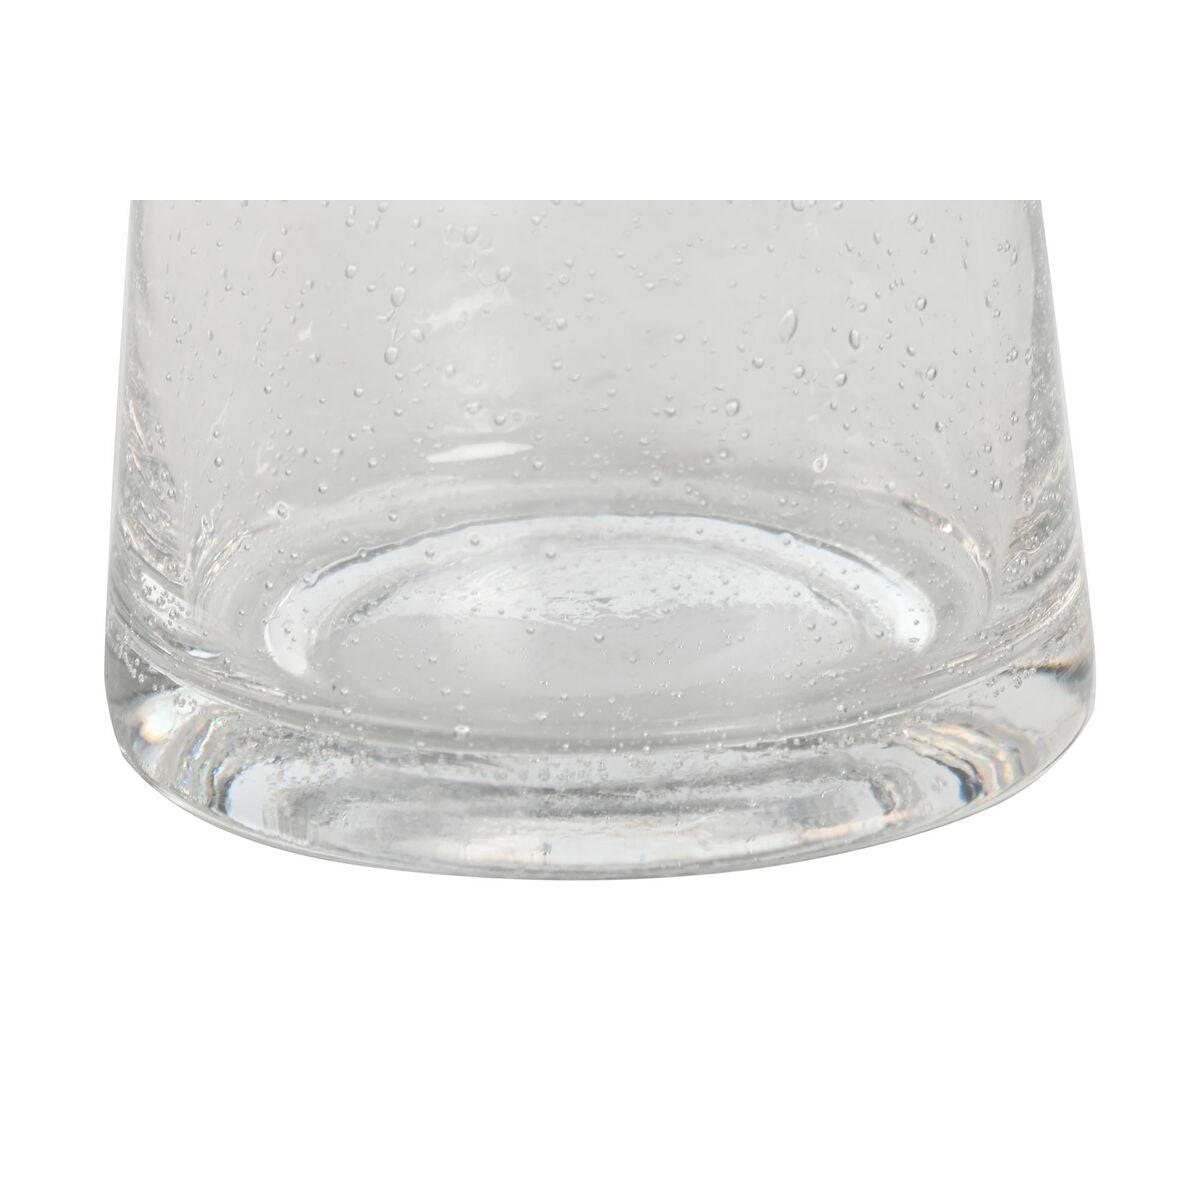 Kanne Home ESPRIT Durchsichtig Kristall 1,2 L